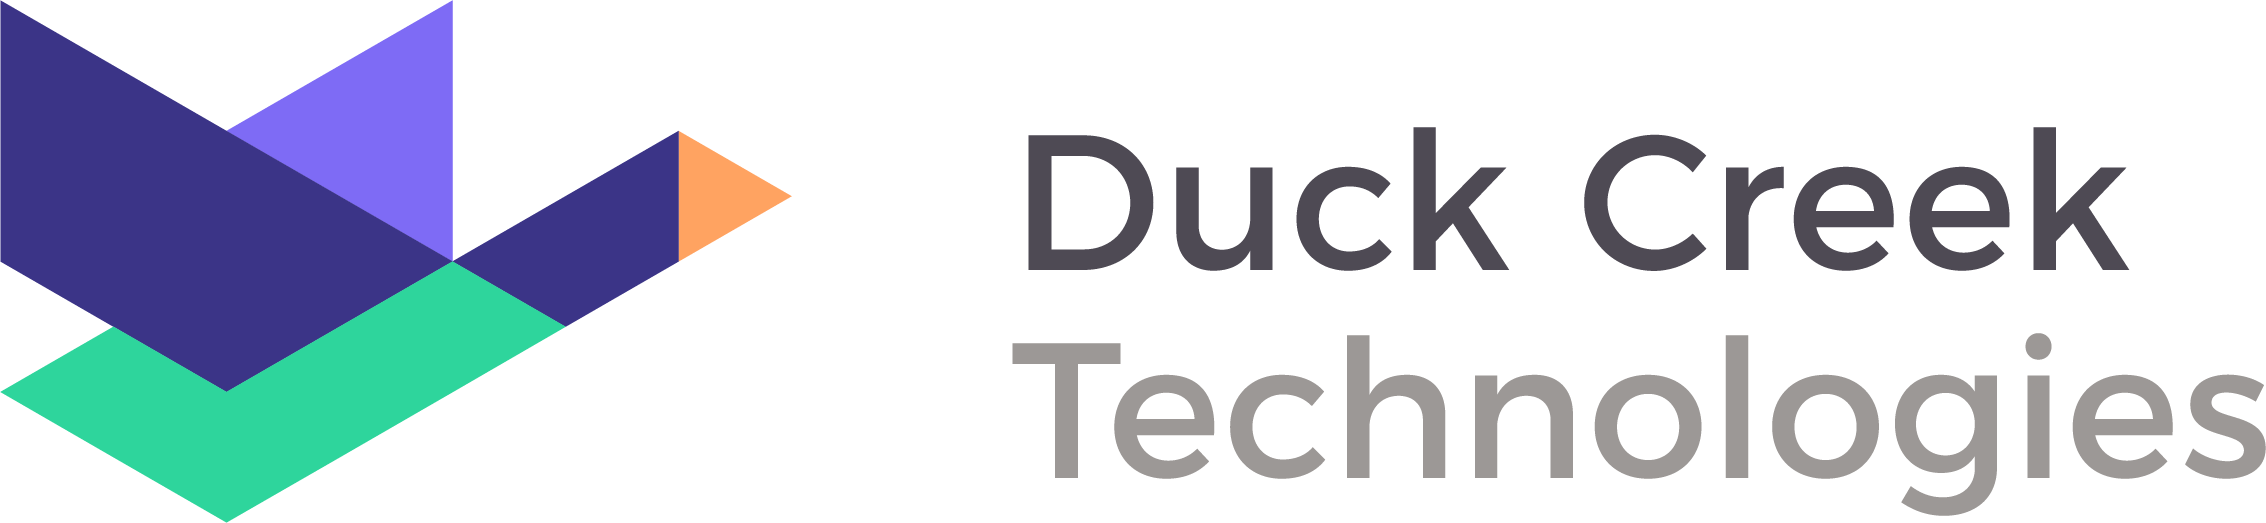 Xceedance Joins Duck